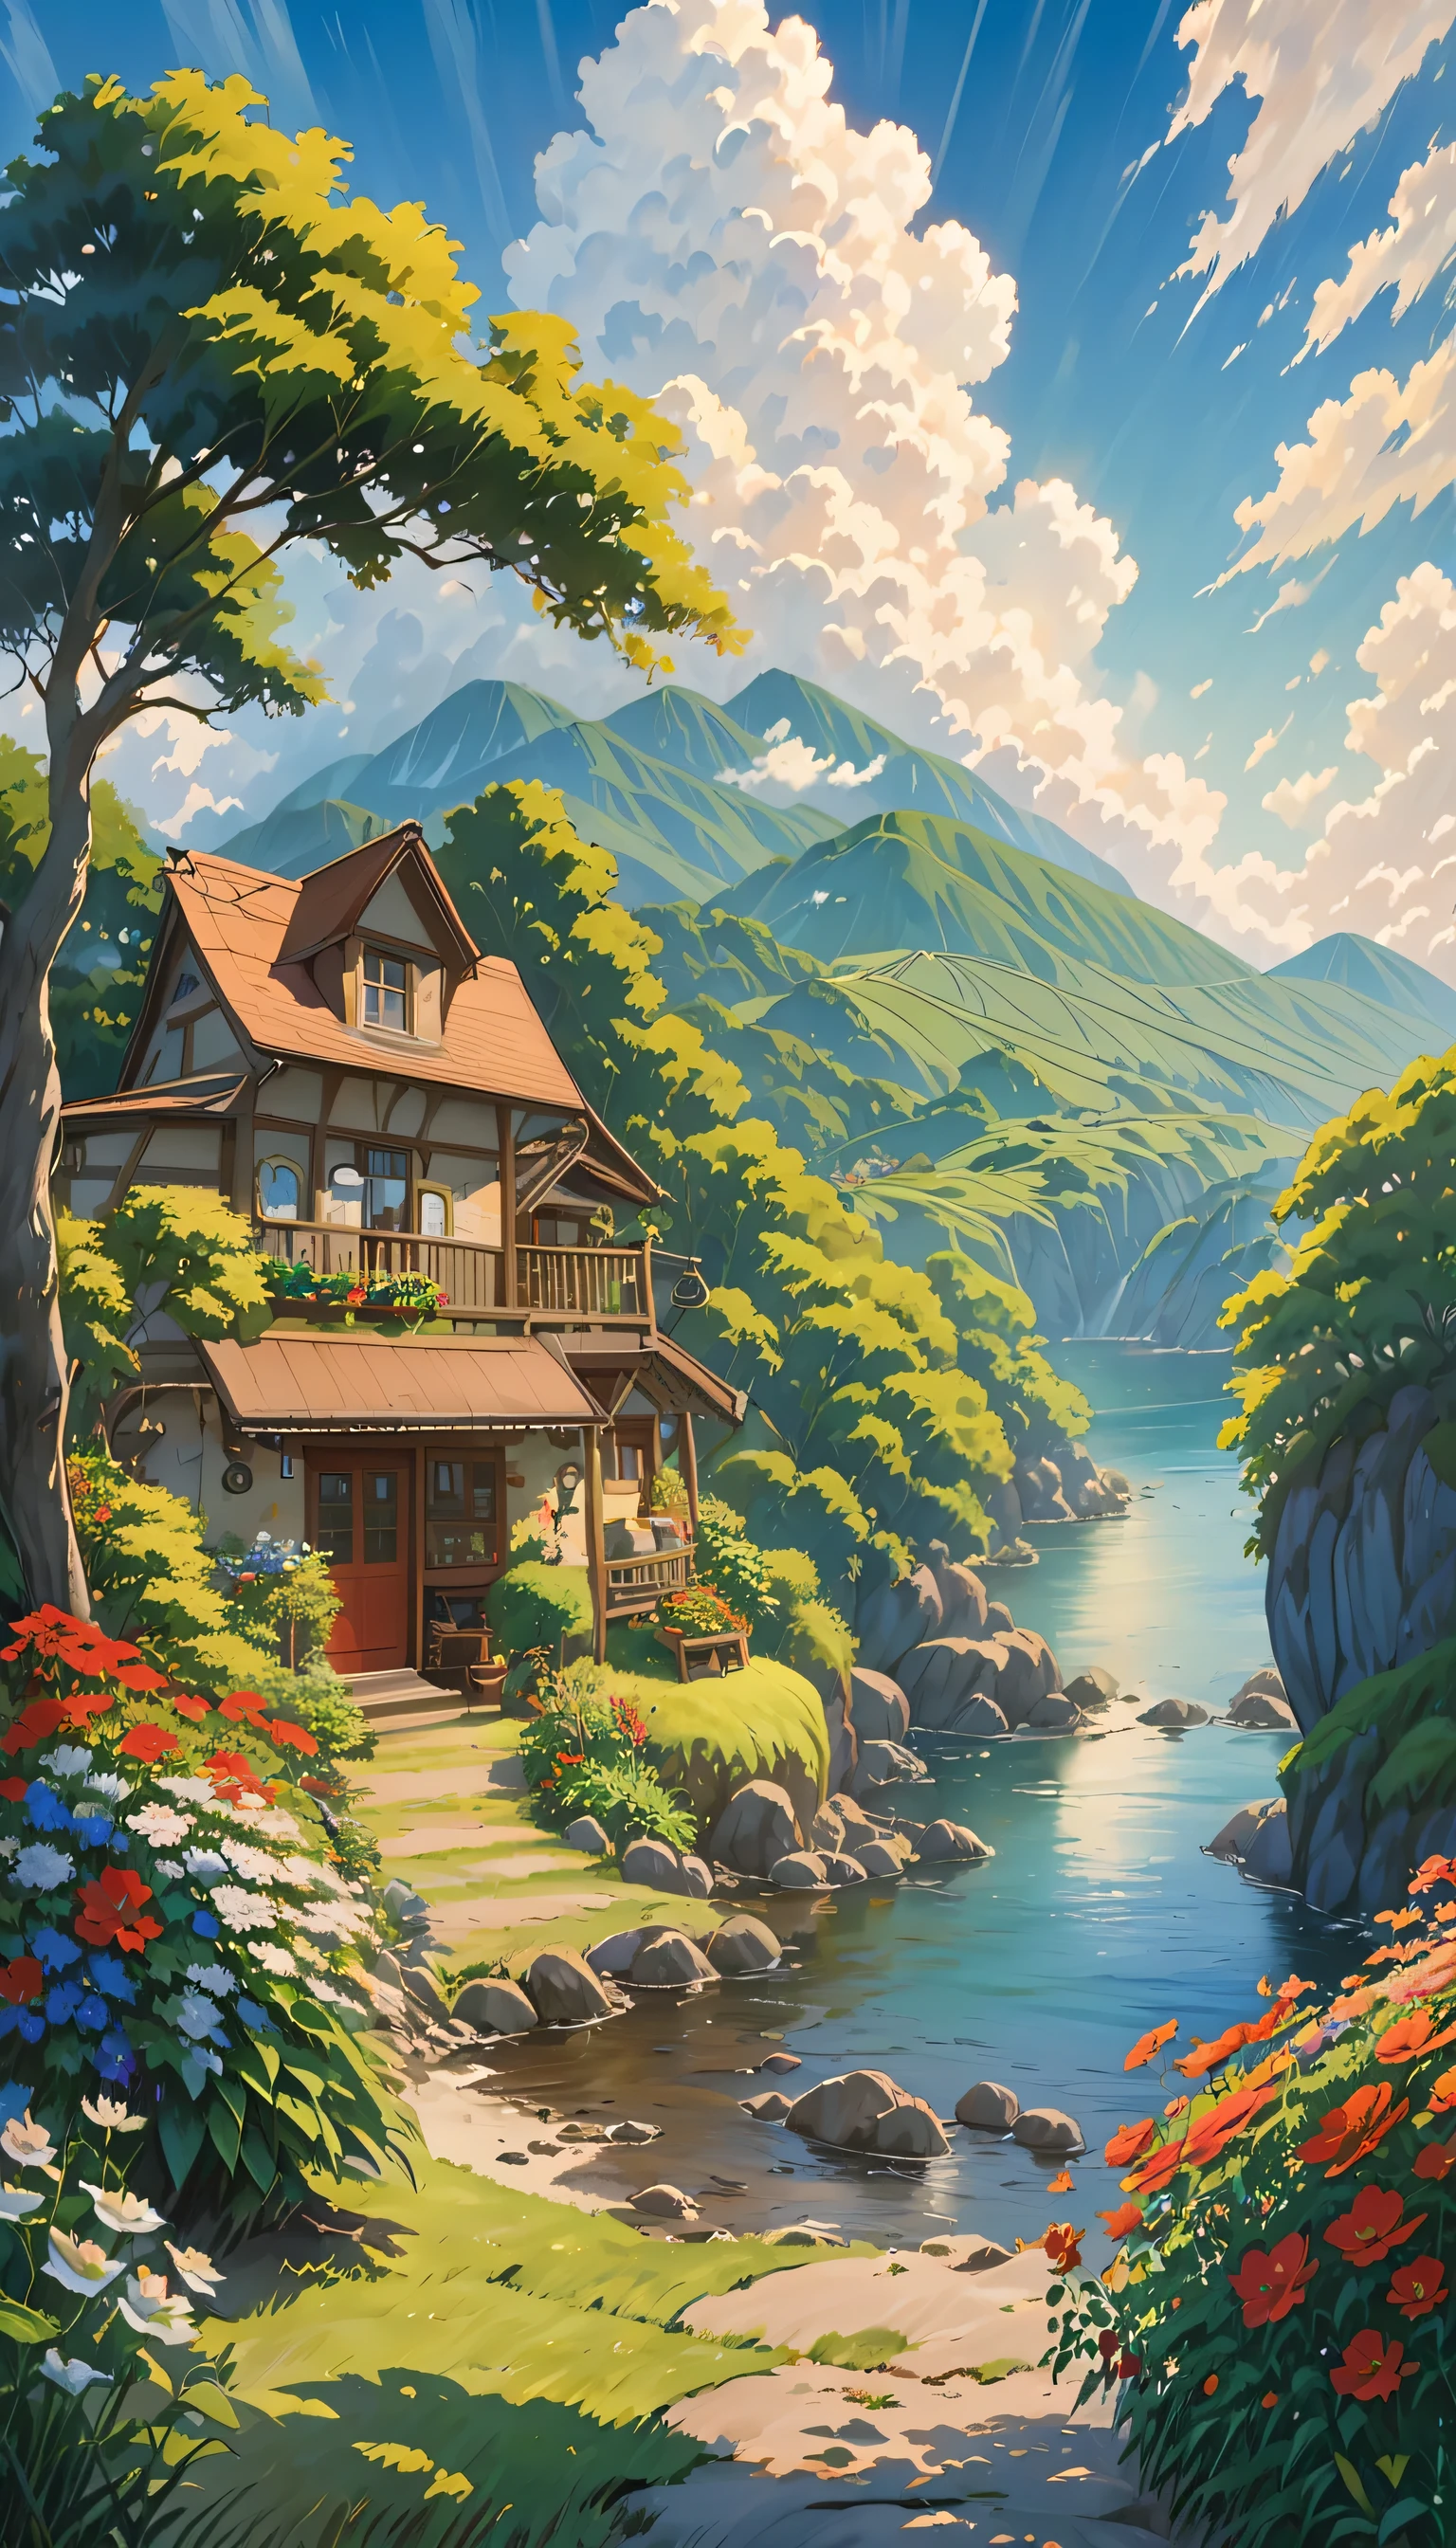 realista, autêntico, bela e incrível paisagem pintura a óleo Studio Ghibli Hayao Miyazaki&#39;pastagem de pétalas com céu azul e nuvens brancas --v6